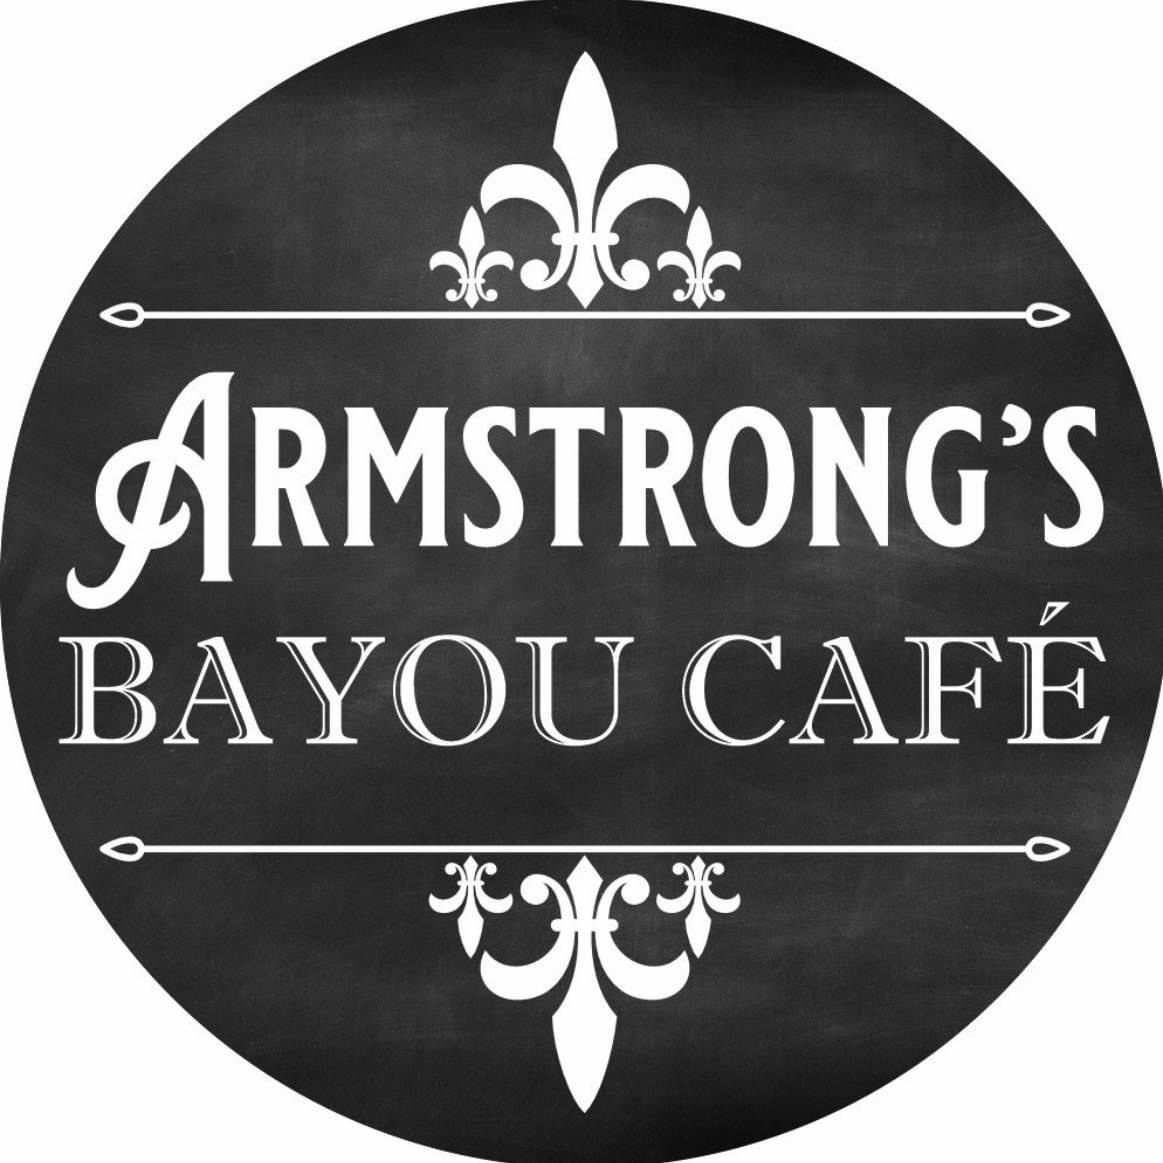 Armstrong’s Bayou Cafe